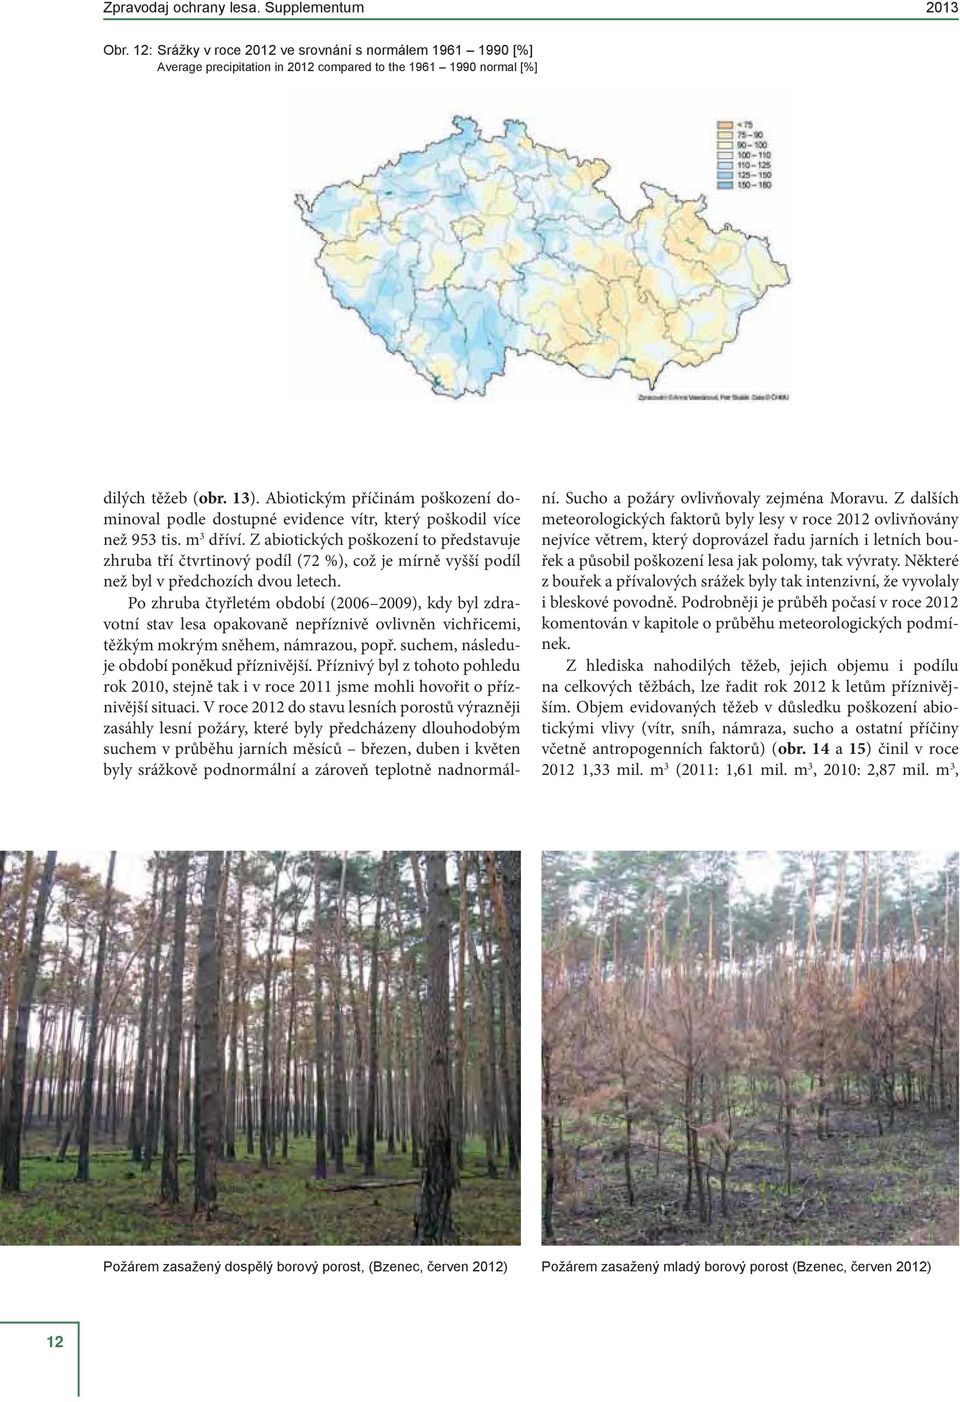 Po zhruba čtyřletém období (2006 2009), kdy byl zdravotní stav lesa opakovaně nepříznivě ovlivněn vichřicemi, těžkým mokrým sněhem, námrazou, popř. suchem, následuje období poněkud příznivější.